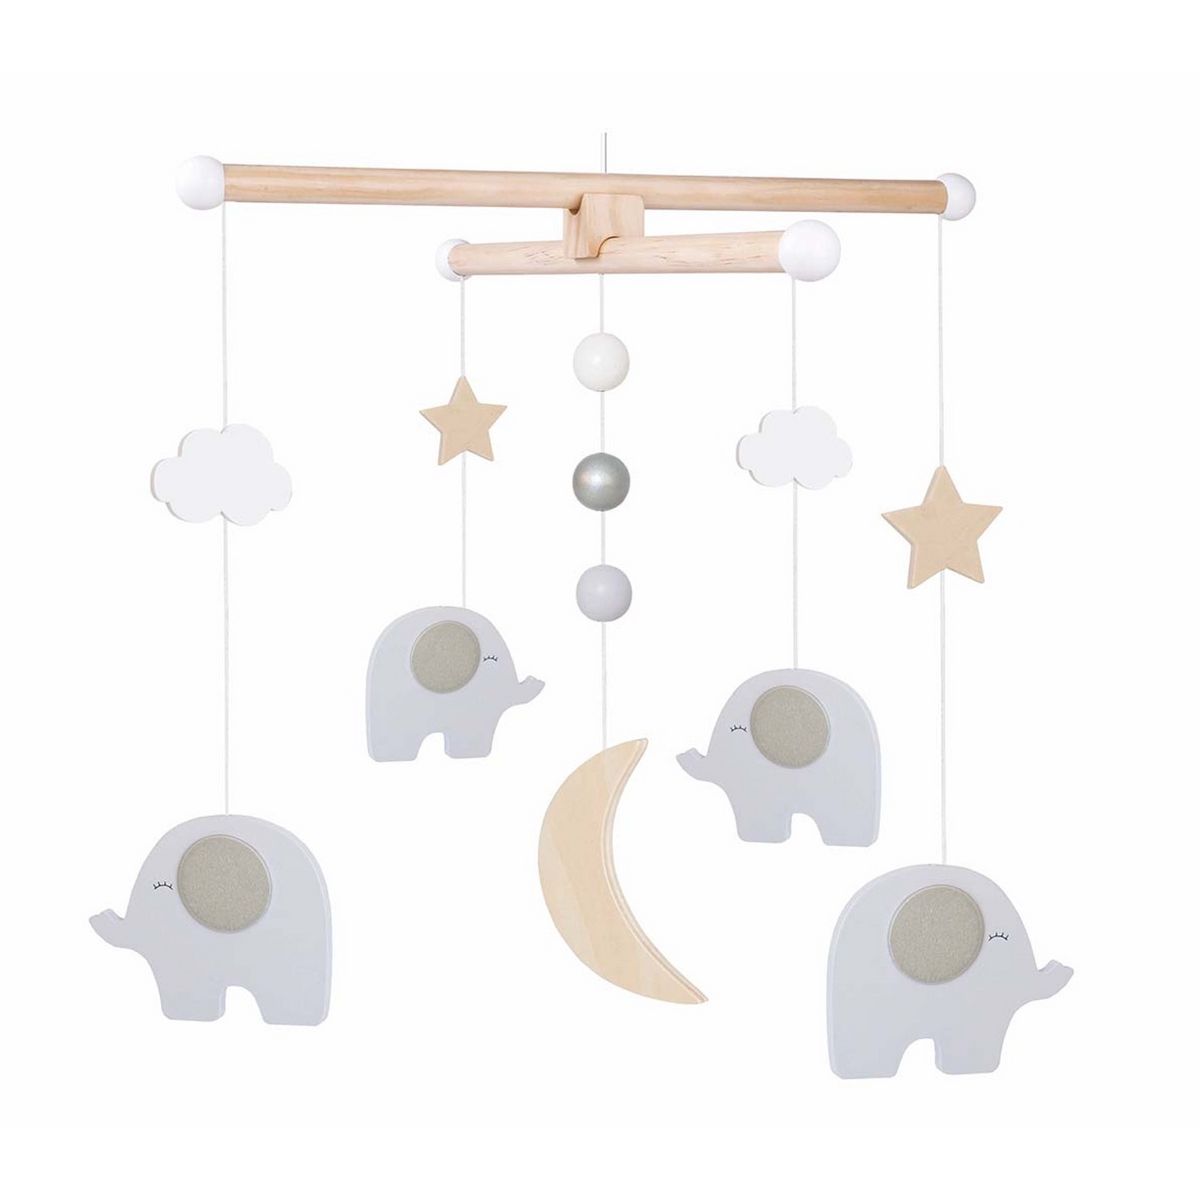 Mobile en bois lit bébé, Éléphant, lune et étoiles JaBaDaBaDo pas cher 